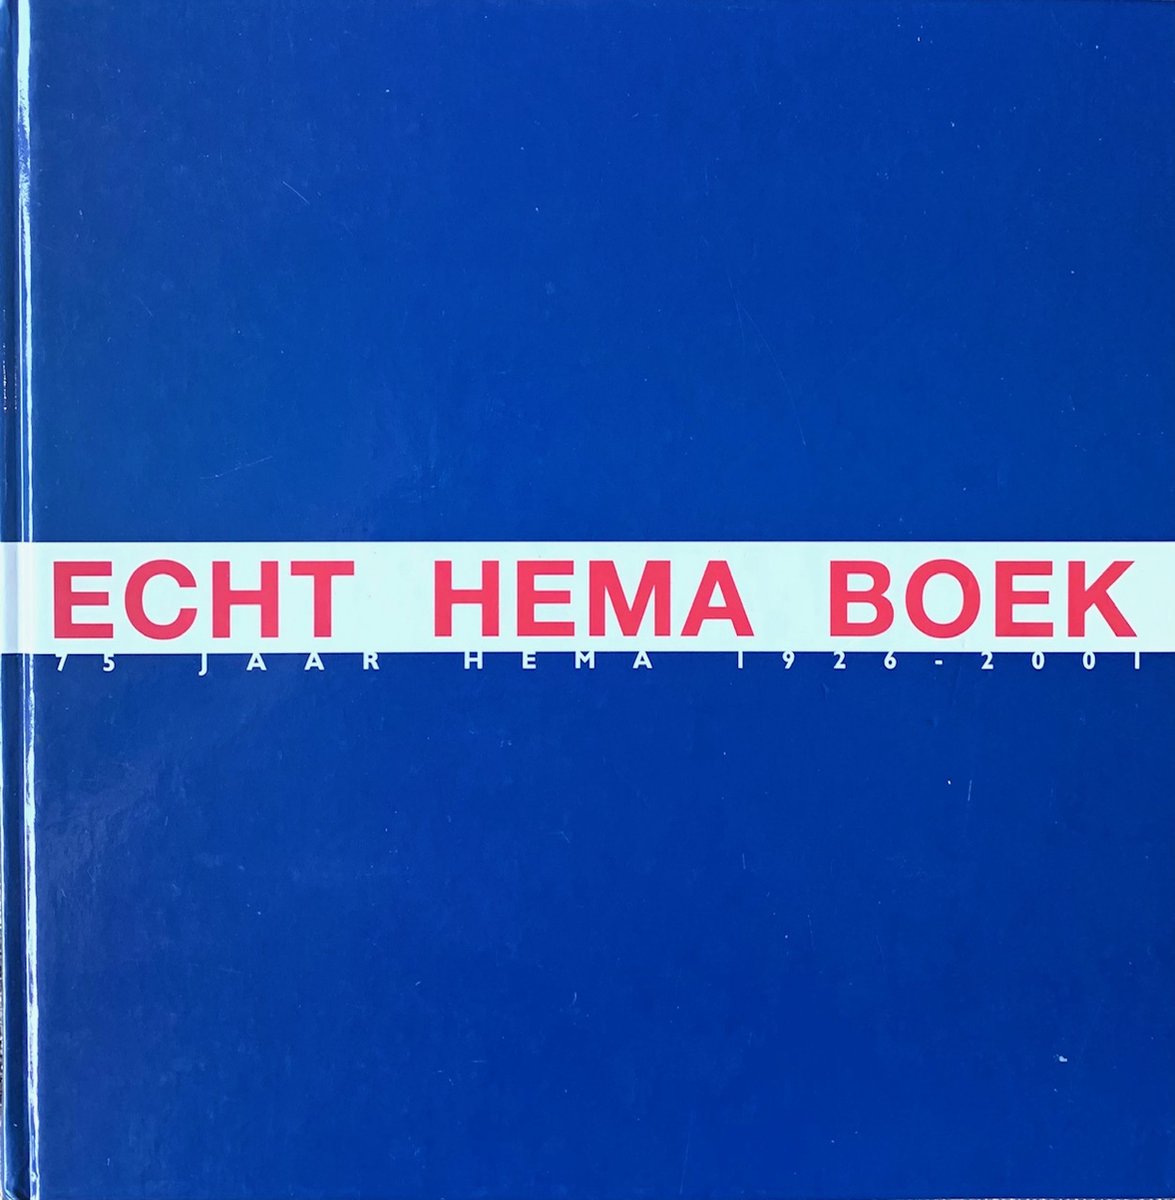 Echt HEMA boek - 75 jaar HEMA 1926 - 2001